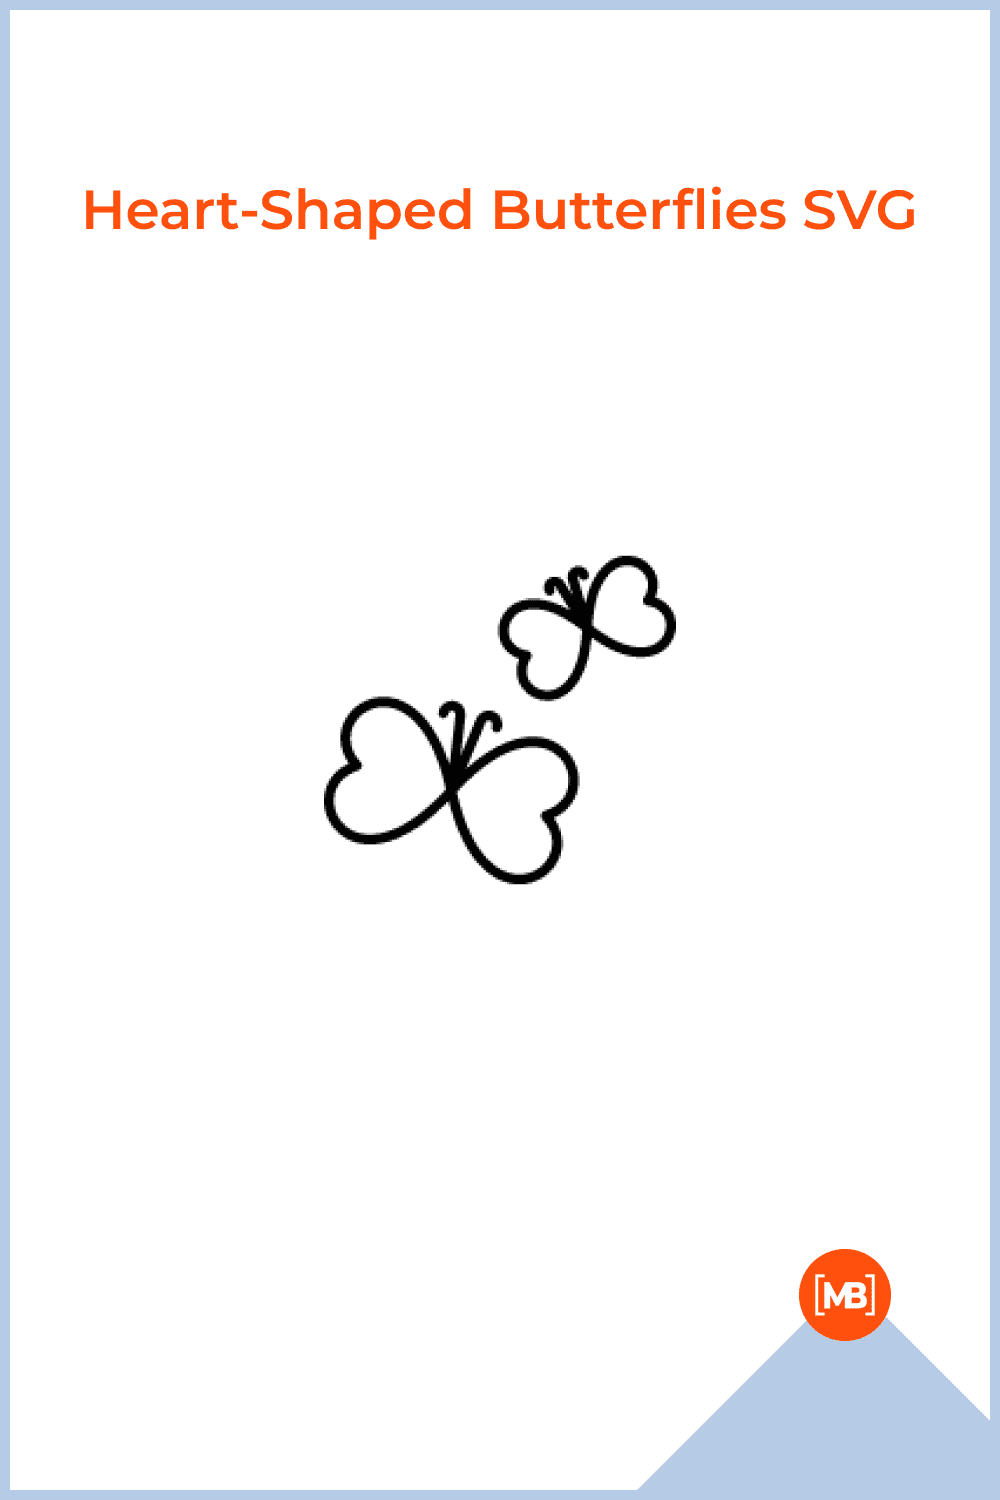 Heart-Shaped Butterflies SVG.